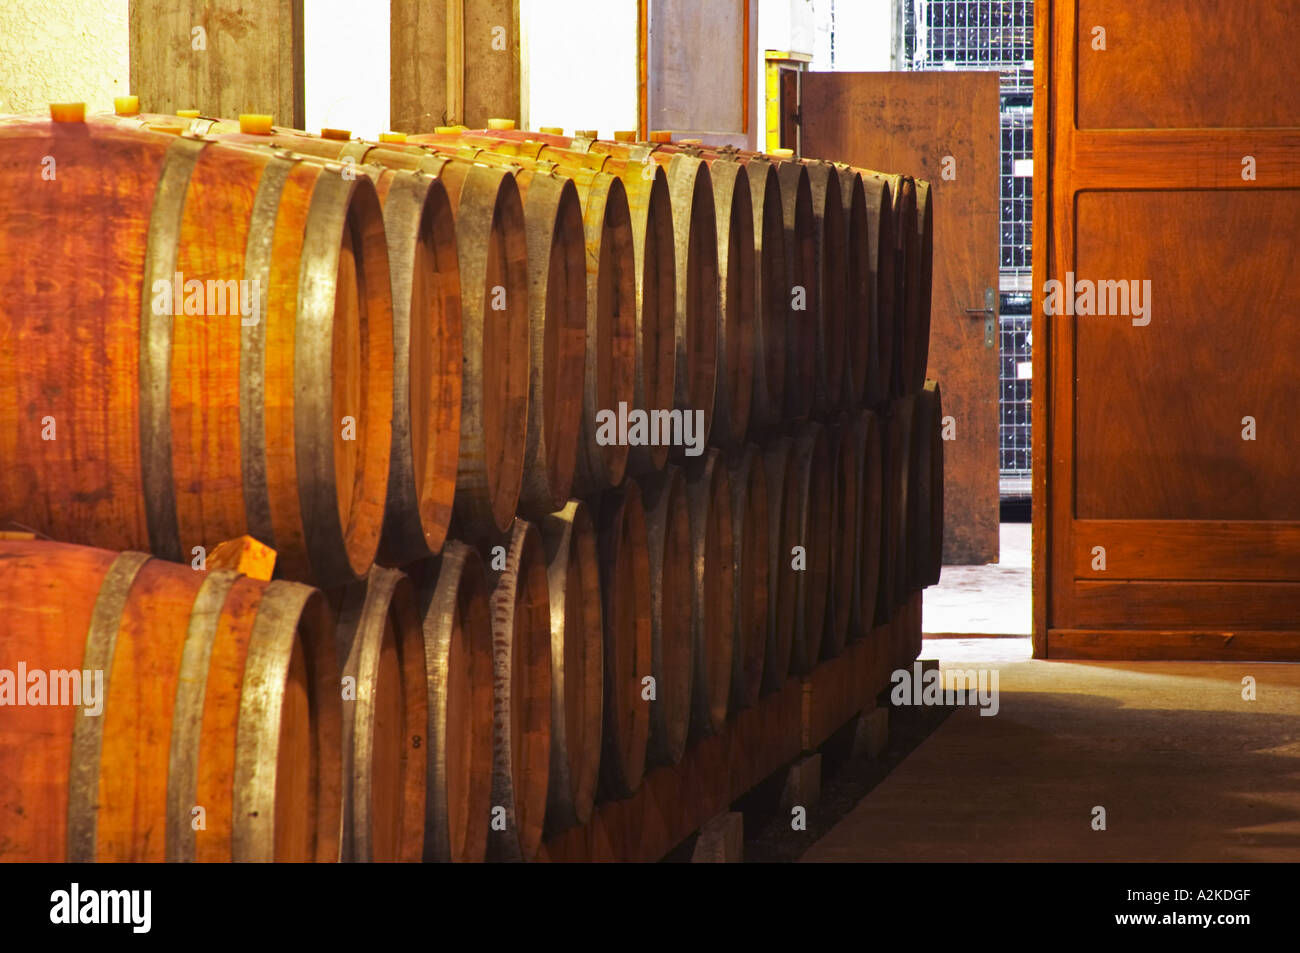 Des fûts de chêne pour le vieillissement du vin dans la cave à vin. Domaine Yves Cuilleron, Chavanay, Ampuis, Rhône, France, Europe Banque D'Images